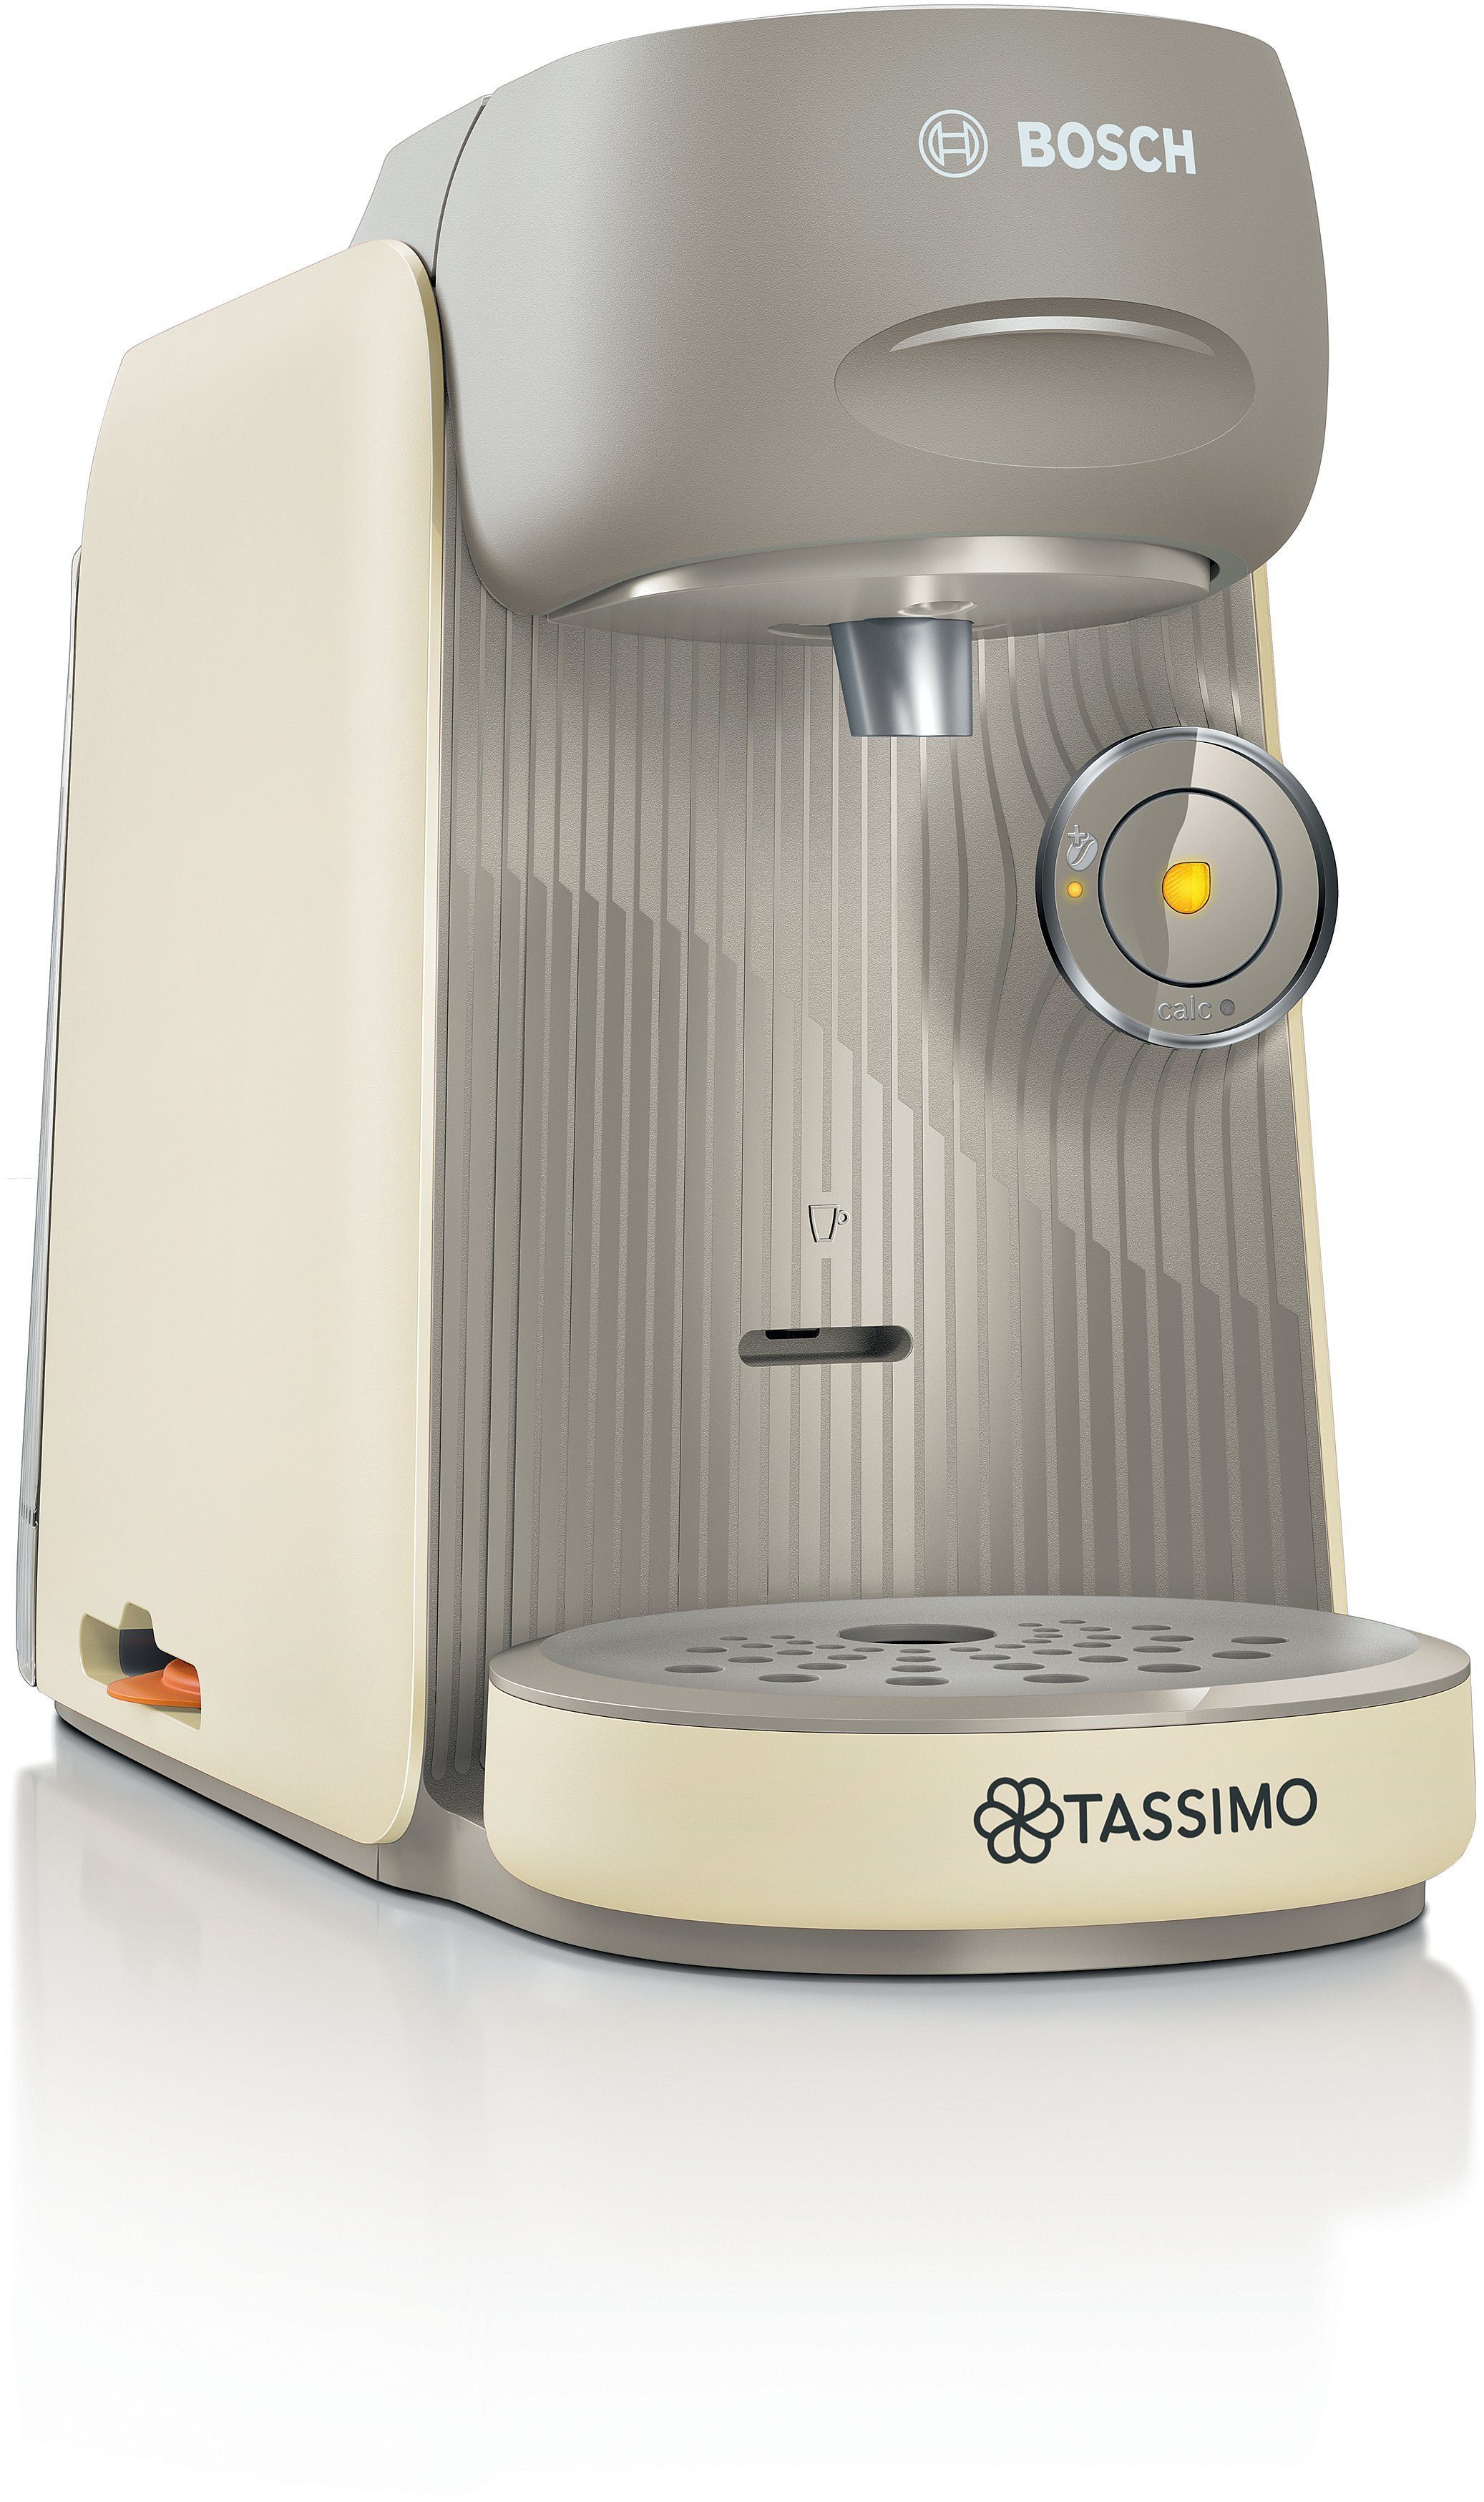 TASSIMO Kapselmaschine Tassimo finesse friendly TAS167P, intensiverer Kaffee auf Kopfdruck, One-Touch Bedienung, über 70 Getränke, platzsparend, creme